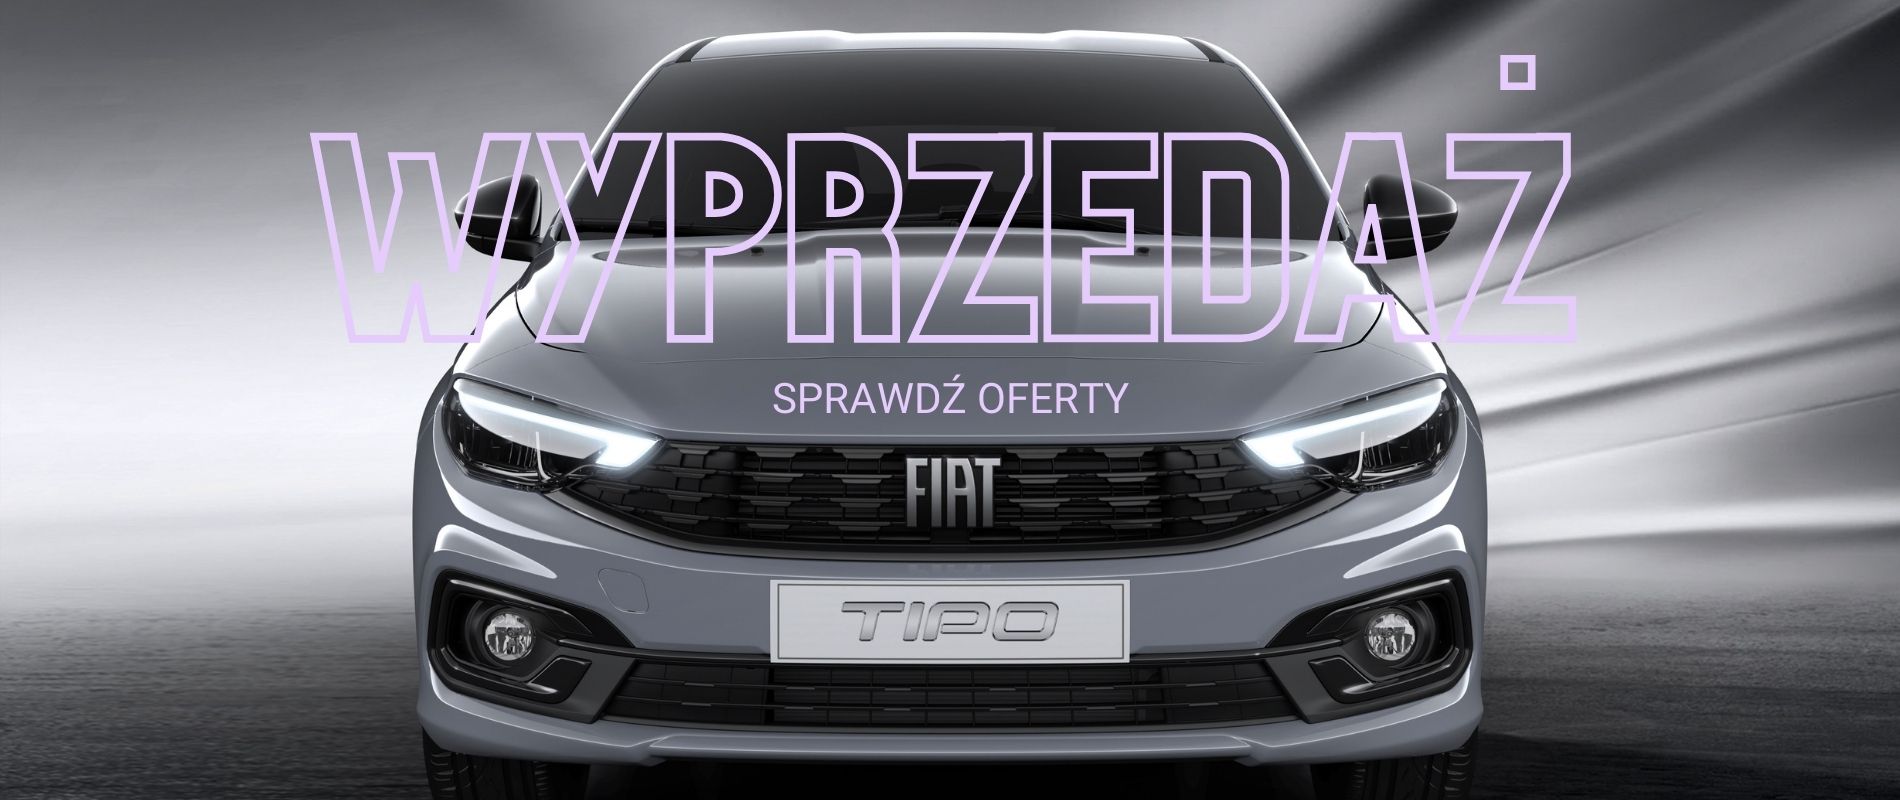 Wyprzedaż Fiat Tipo Warszawa